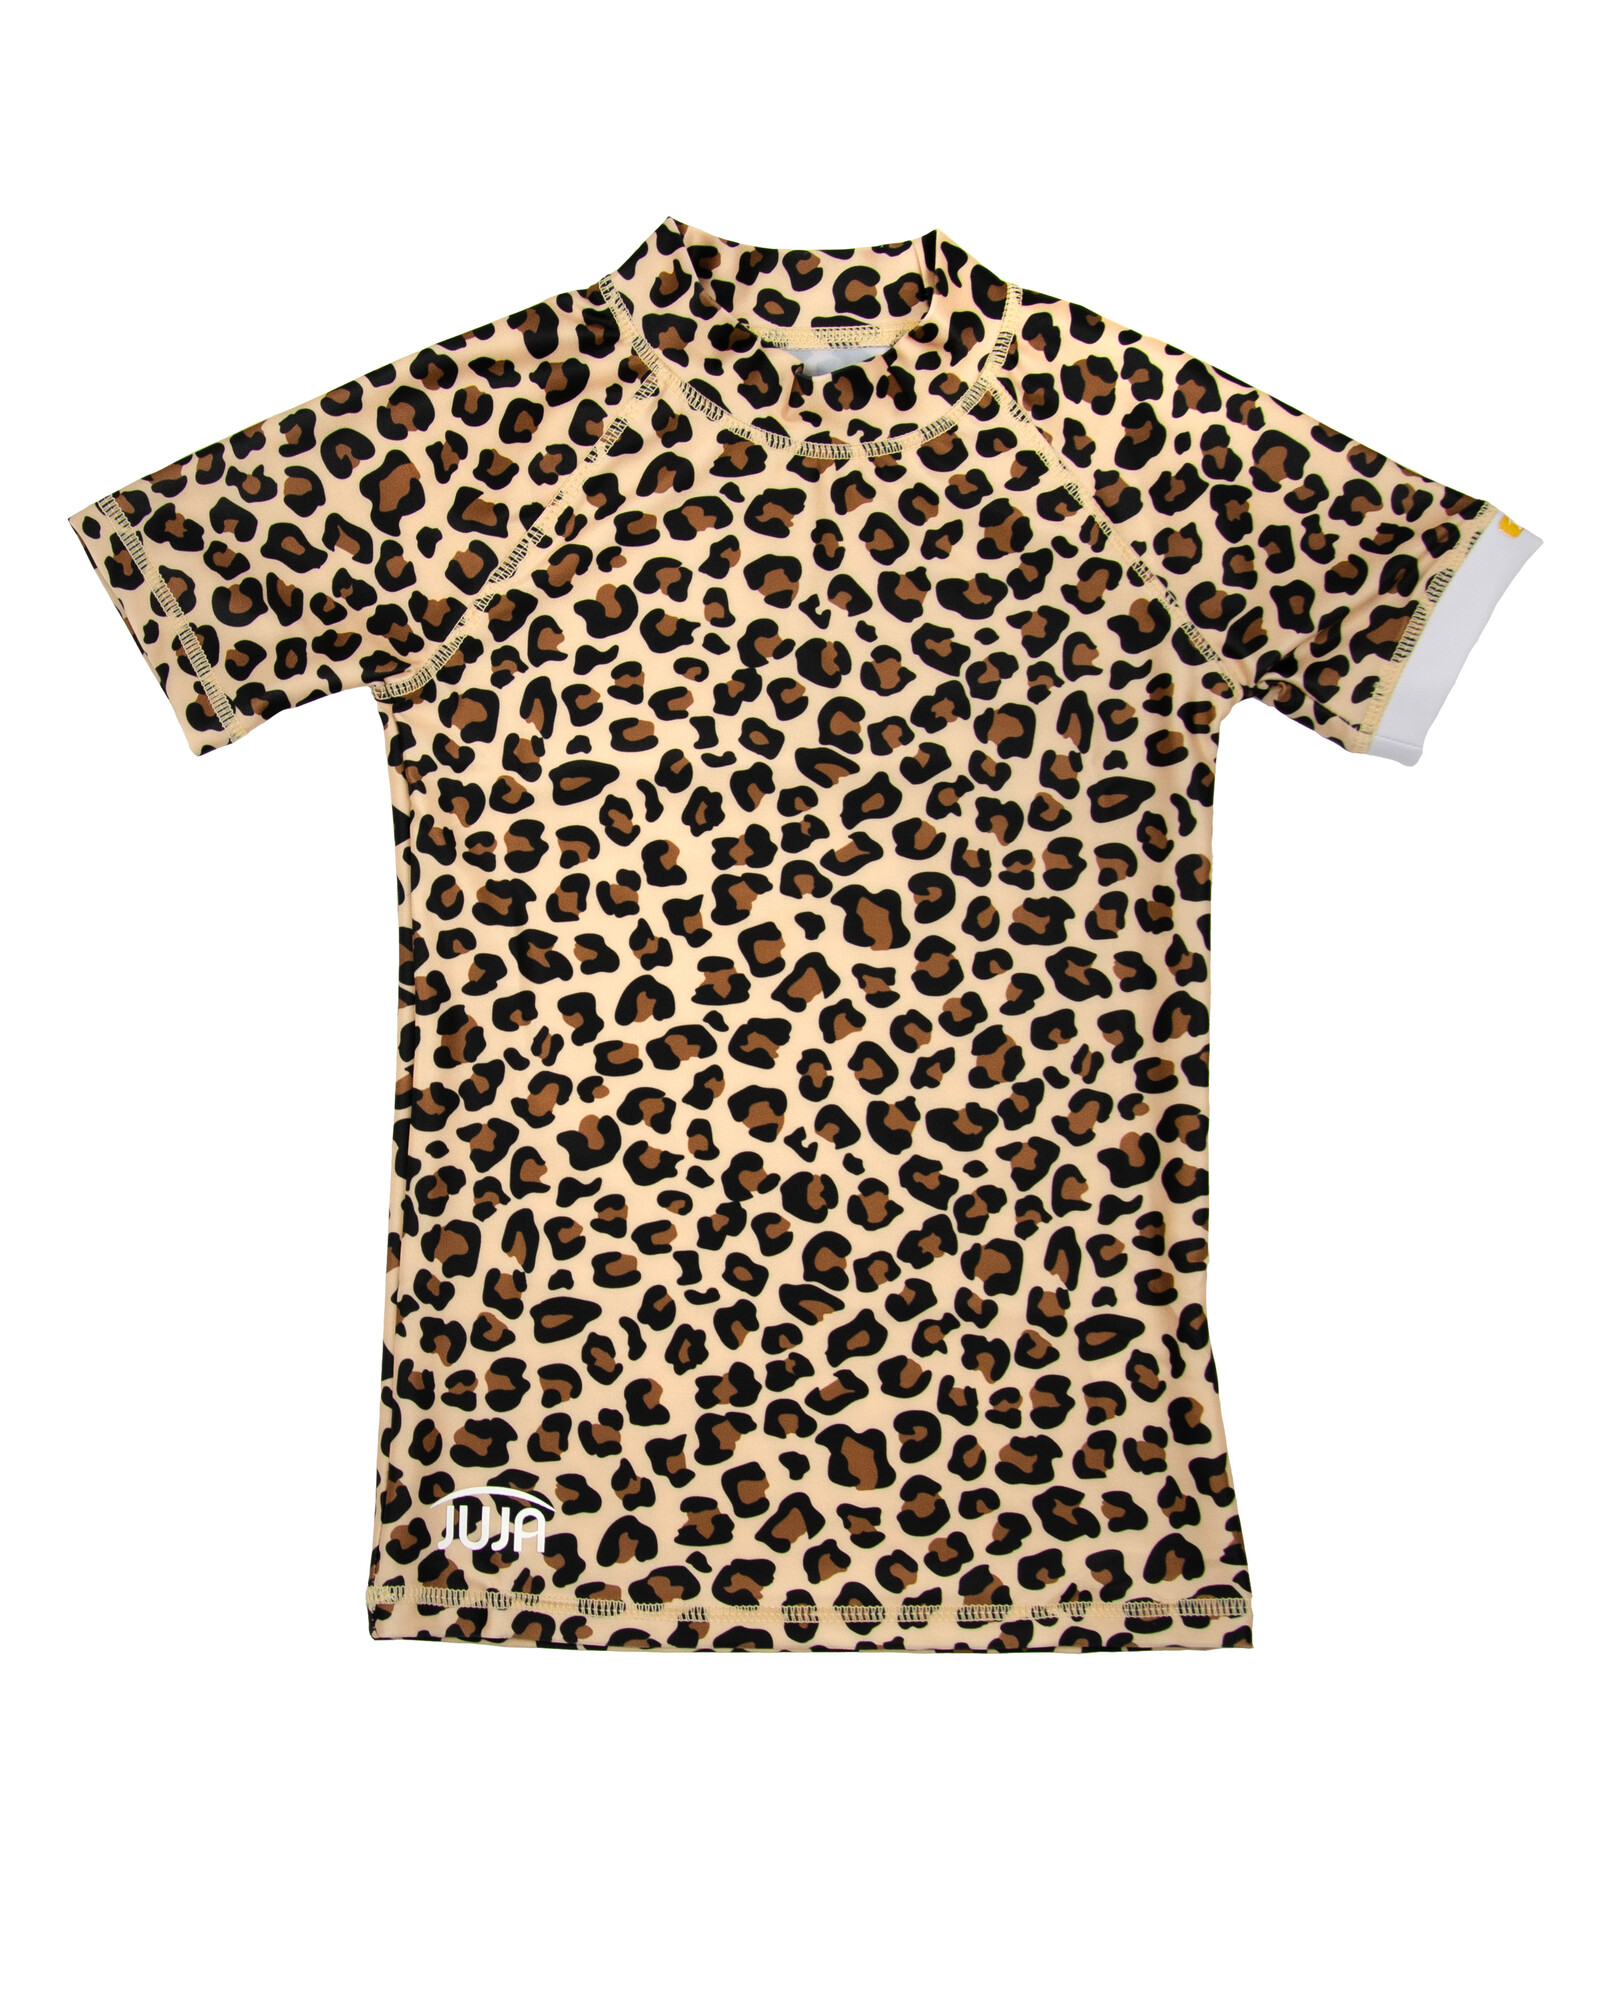 JUJA - UV Swim shirt for girls - Short sleeves - Leopard print - Brown